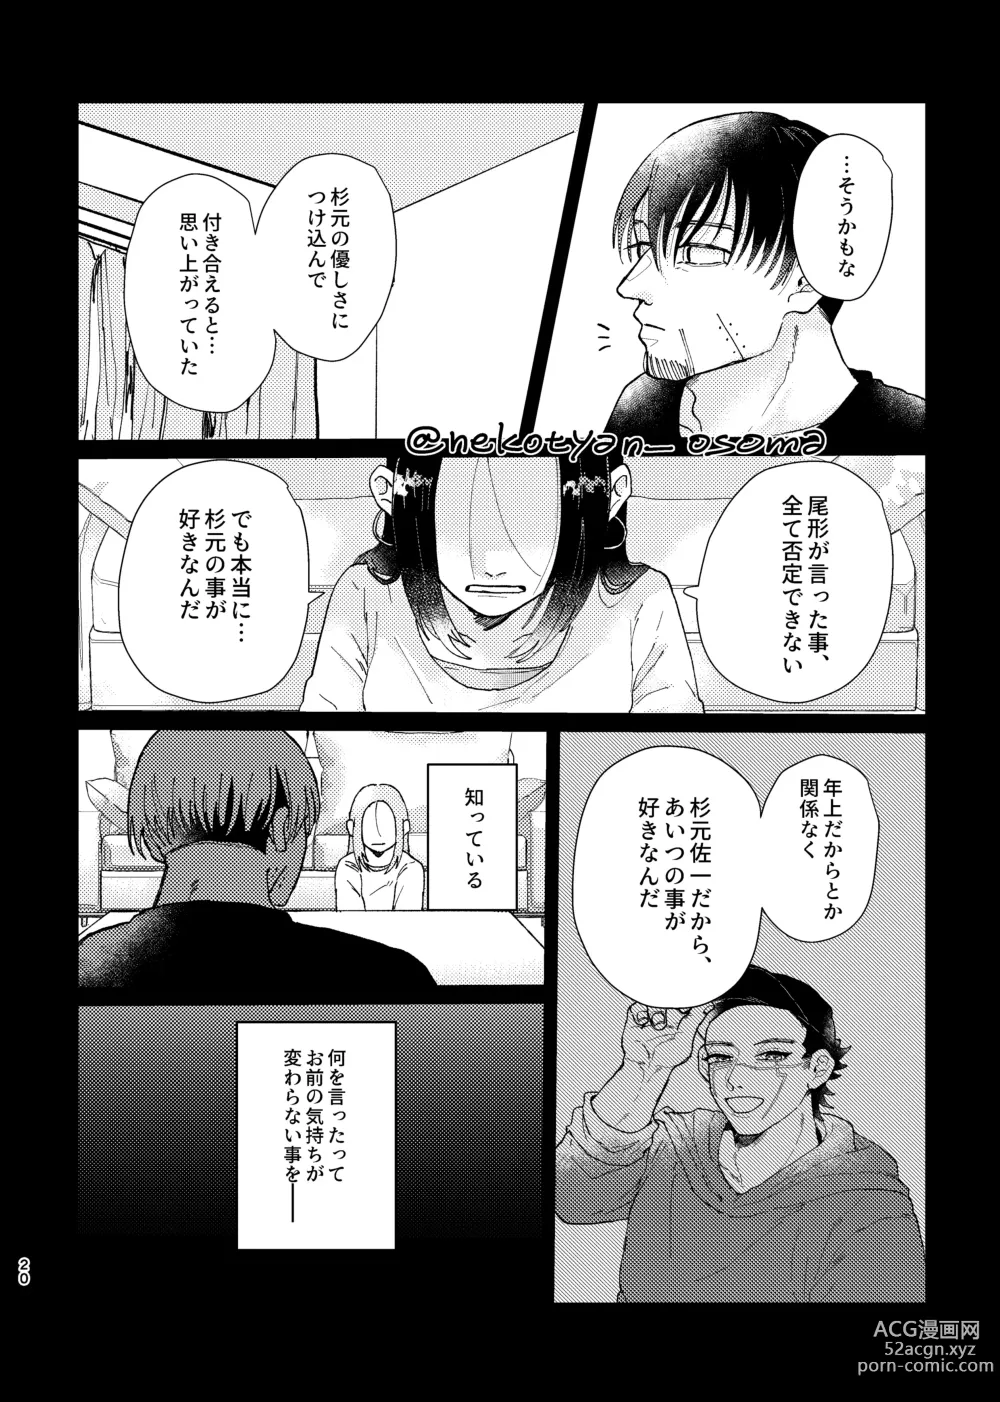 Page 19 of doujinshi Shoujo ga Hana o Sakasu made